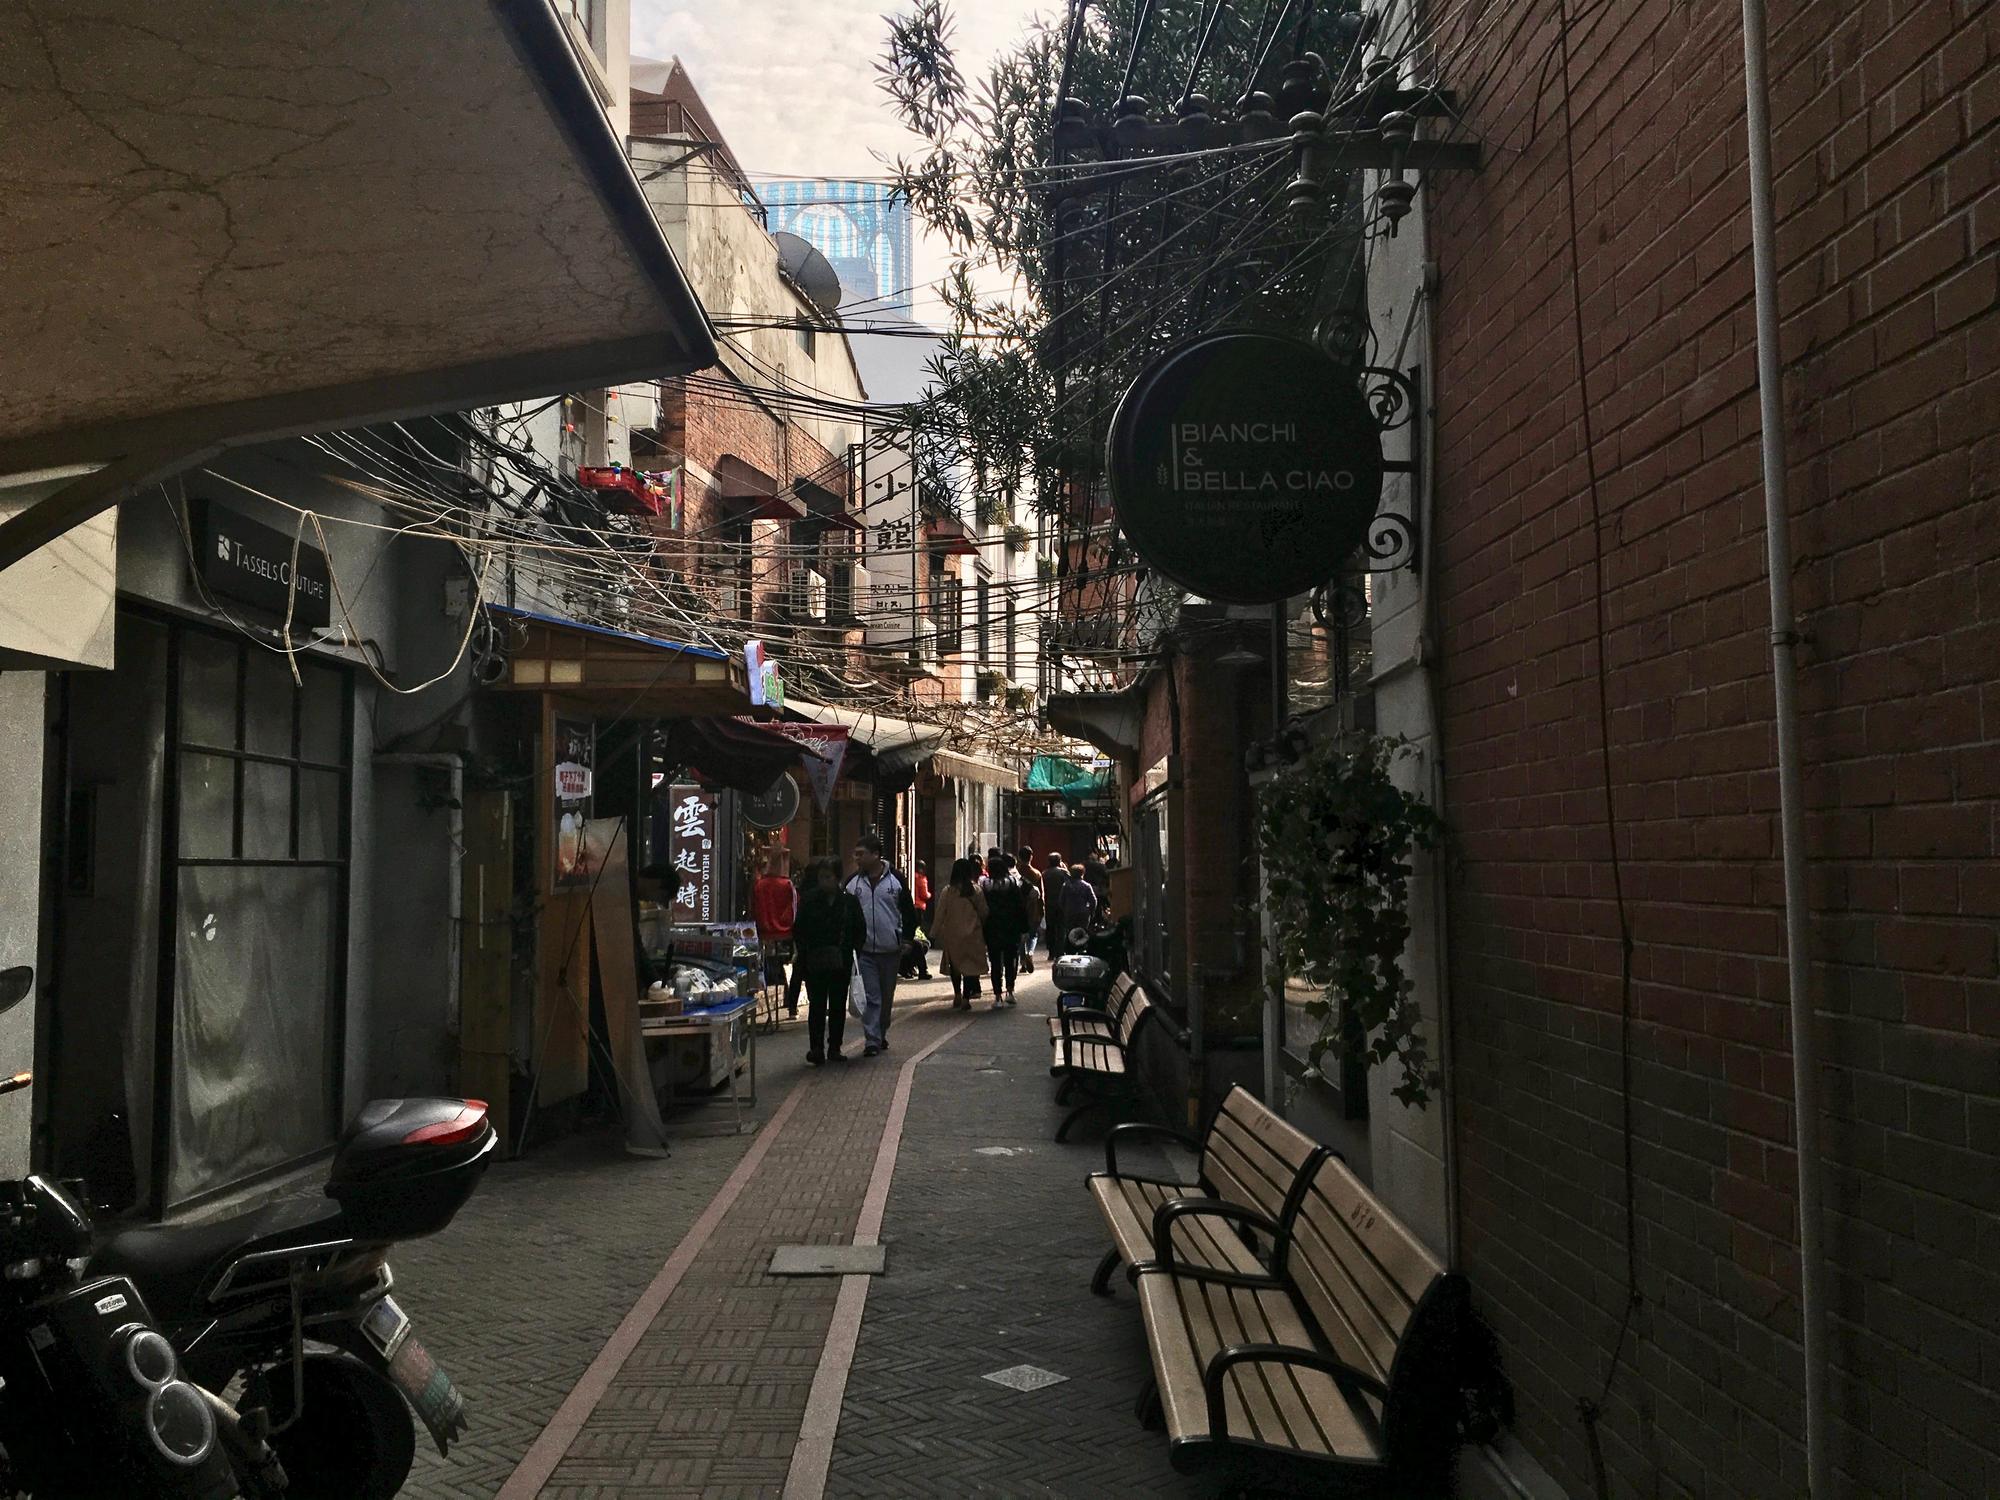 🇨🇳 Shanghai, China, November 2017.